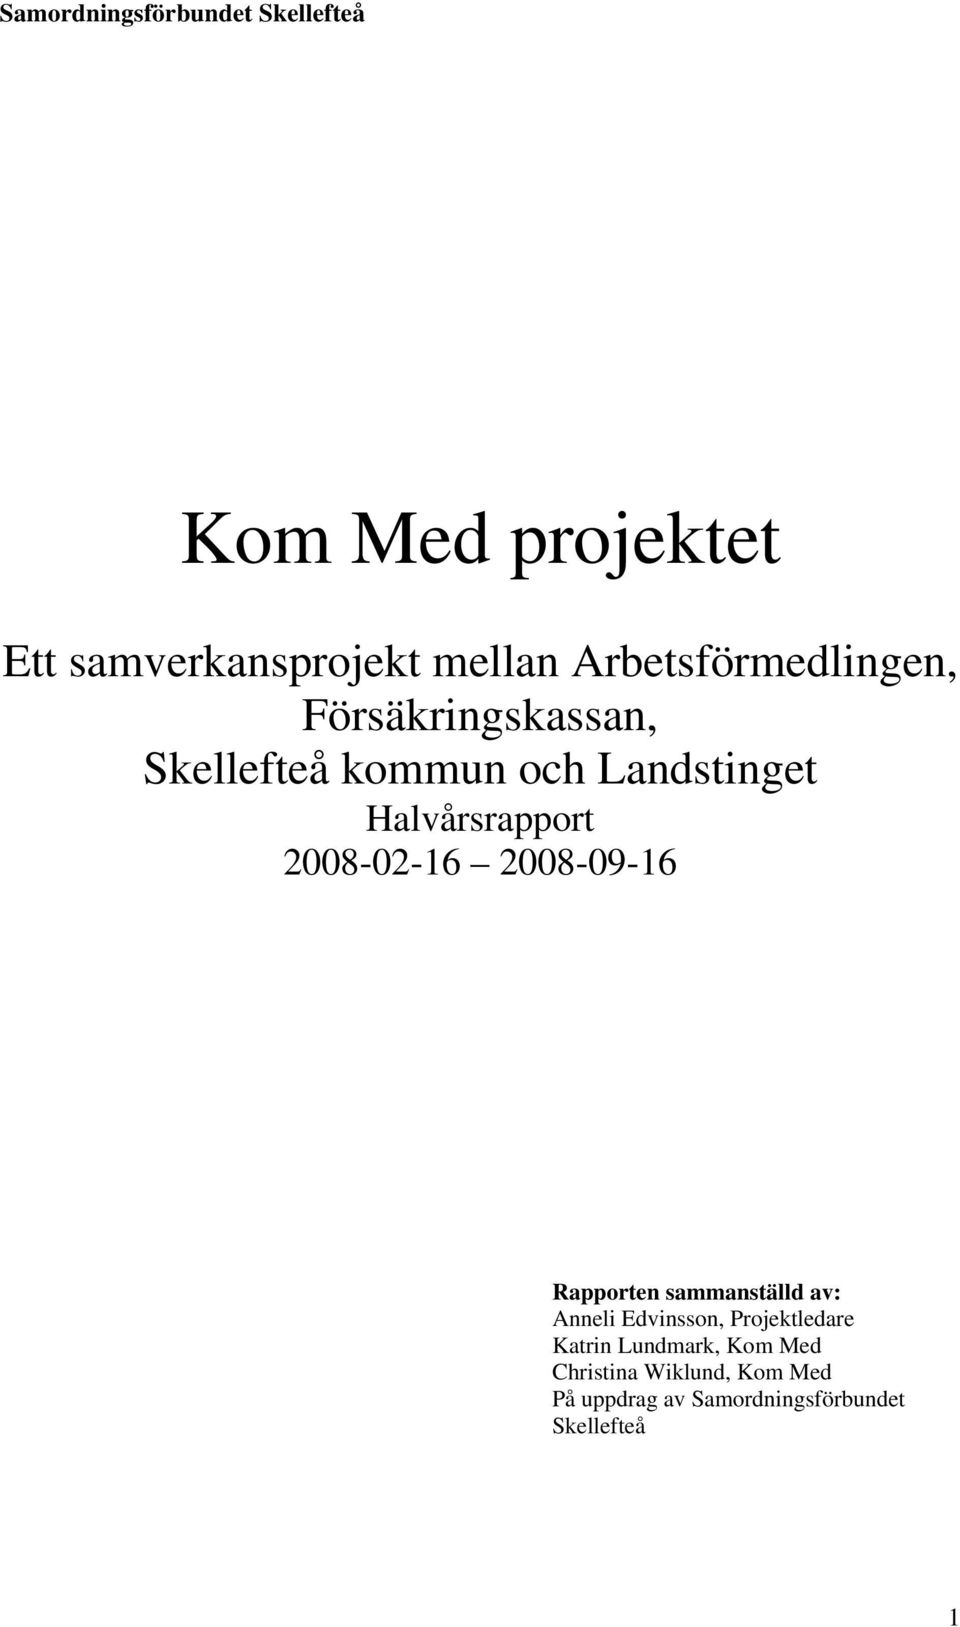 2008-09-16 Rapporten sammanställd av: Anneli Edvinsson, Projektledare Katrin